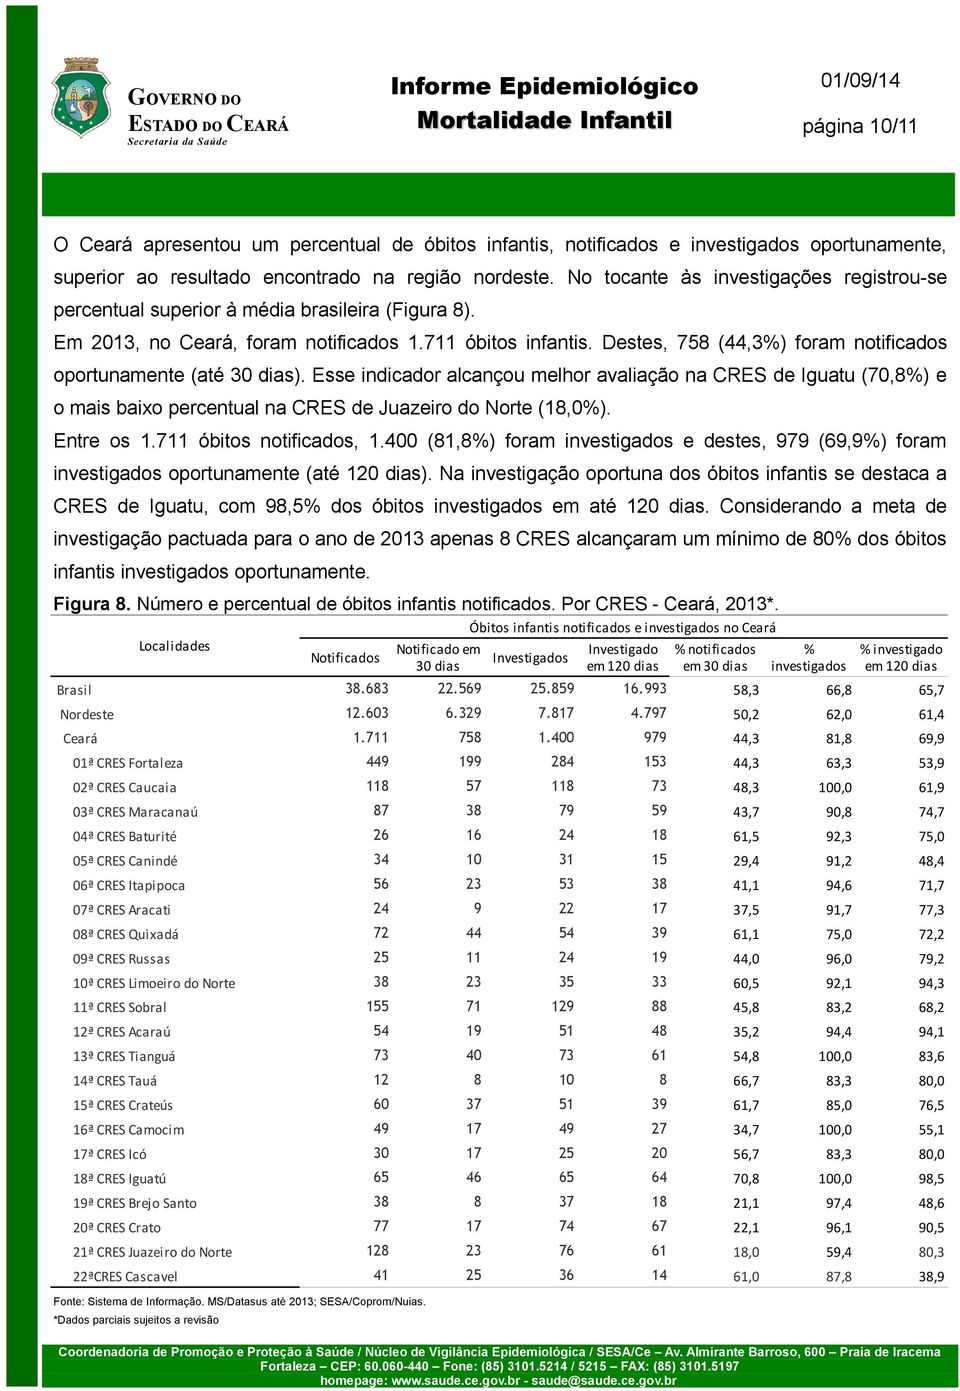 Destes, 758 (44,3%) foram notificados oportunamente (até 30 dias). Esse indicador alcançou melhor avaliação na CRES de Iguatu (70,8%) e o mais baixo percentual na CRES de Juazeiro do Norte (18,0%).